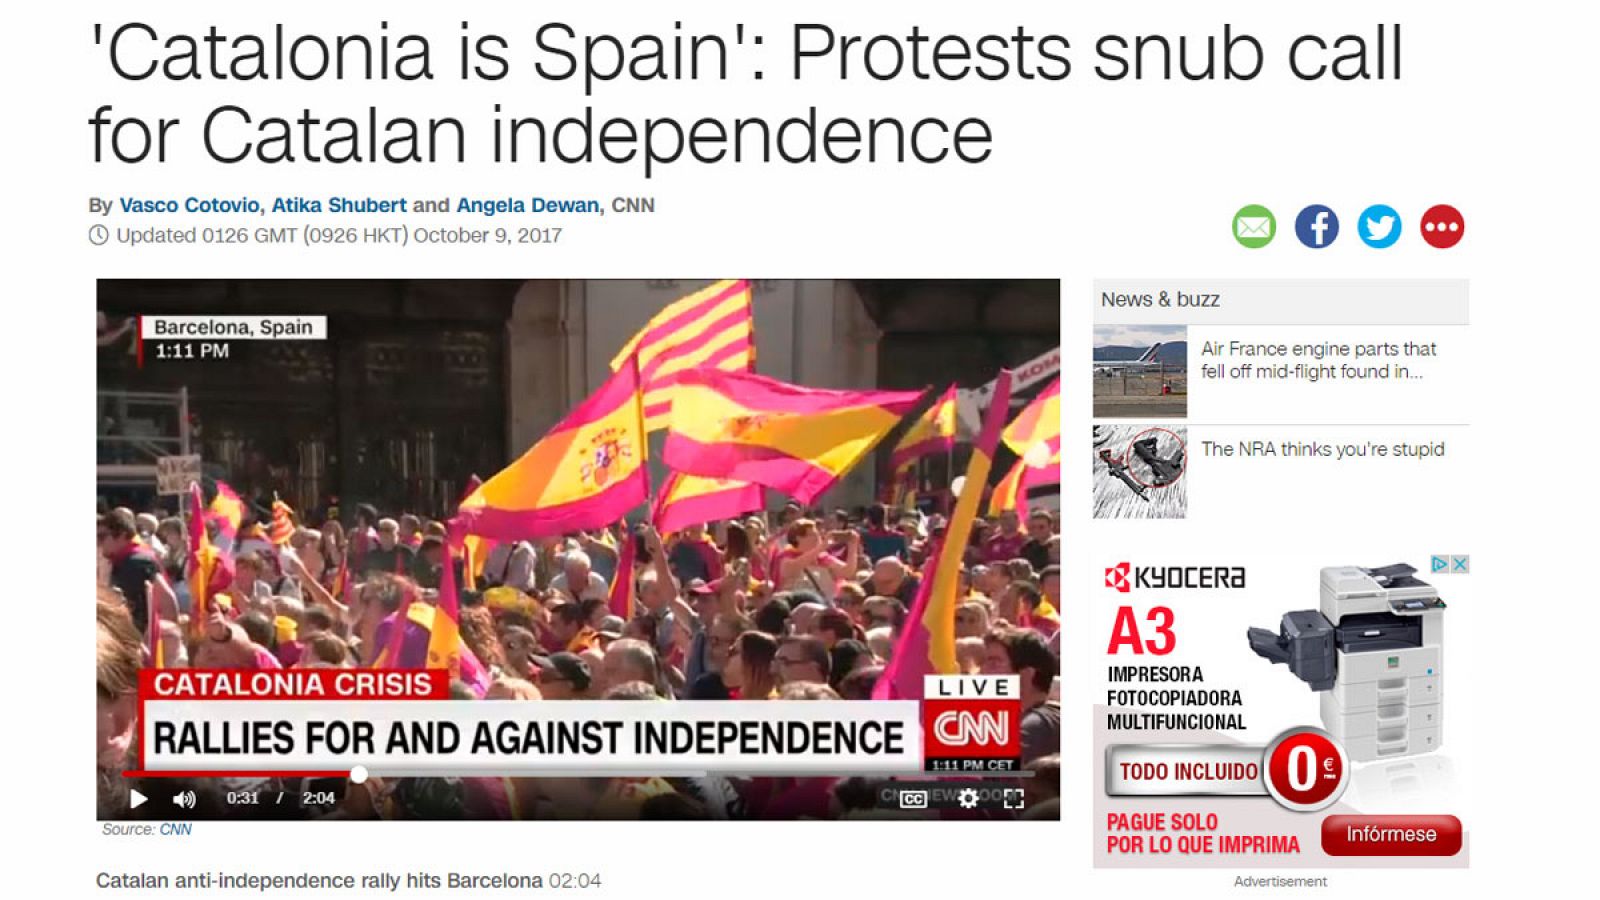 La CNN destaca que "Cataluña es España"